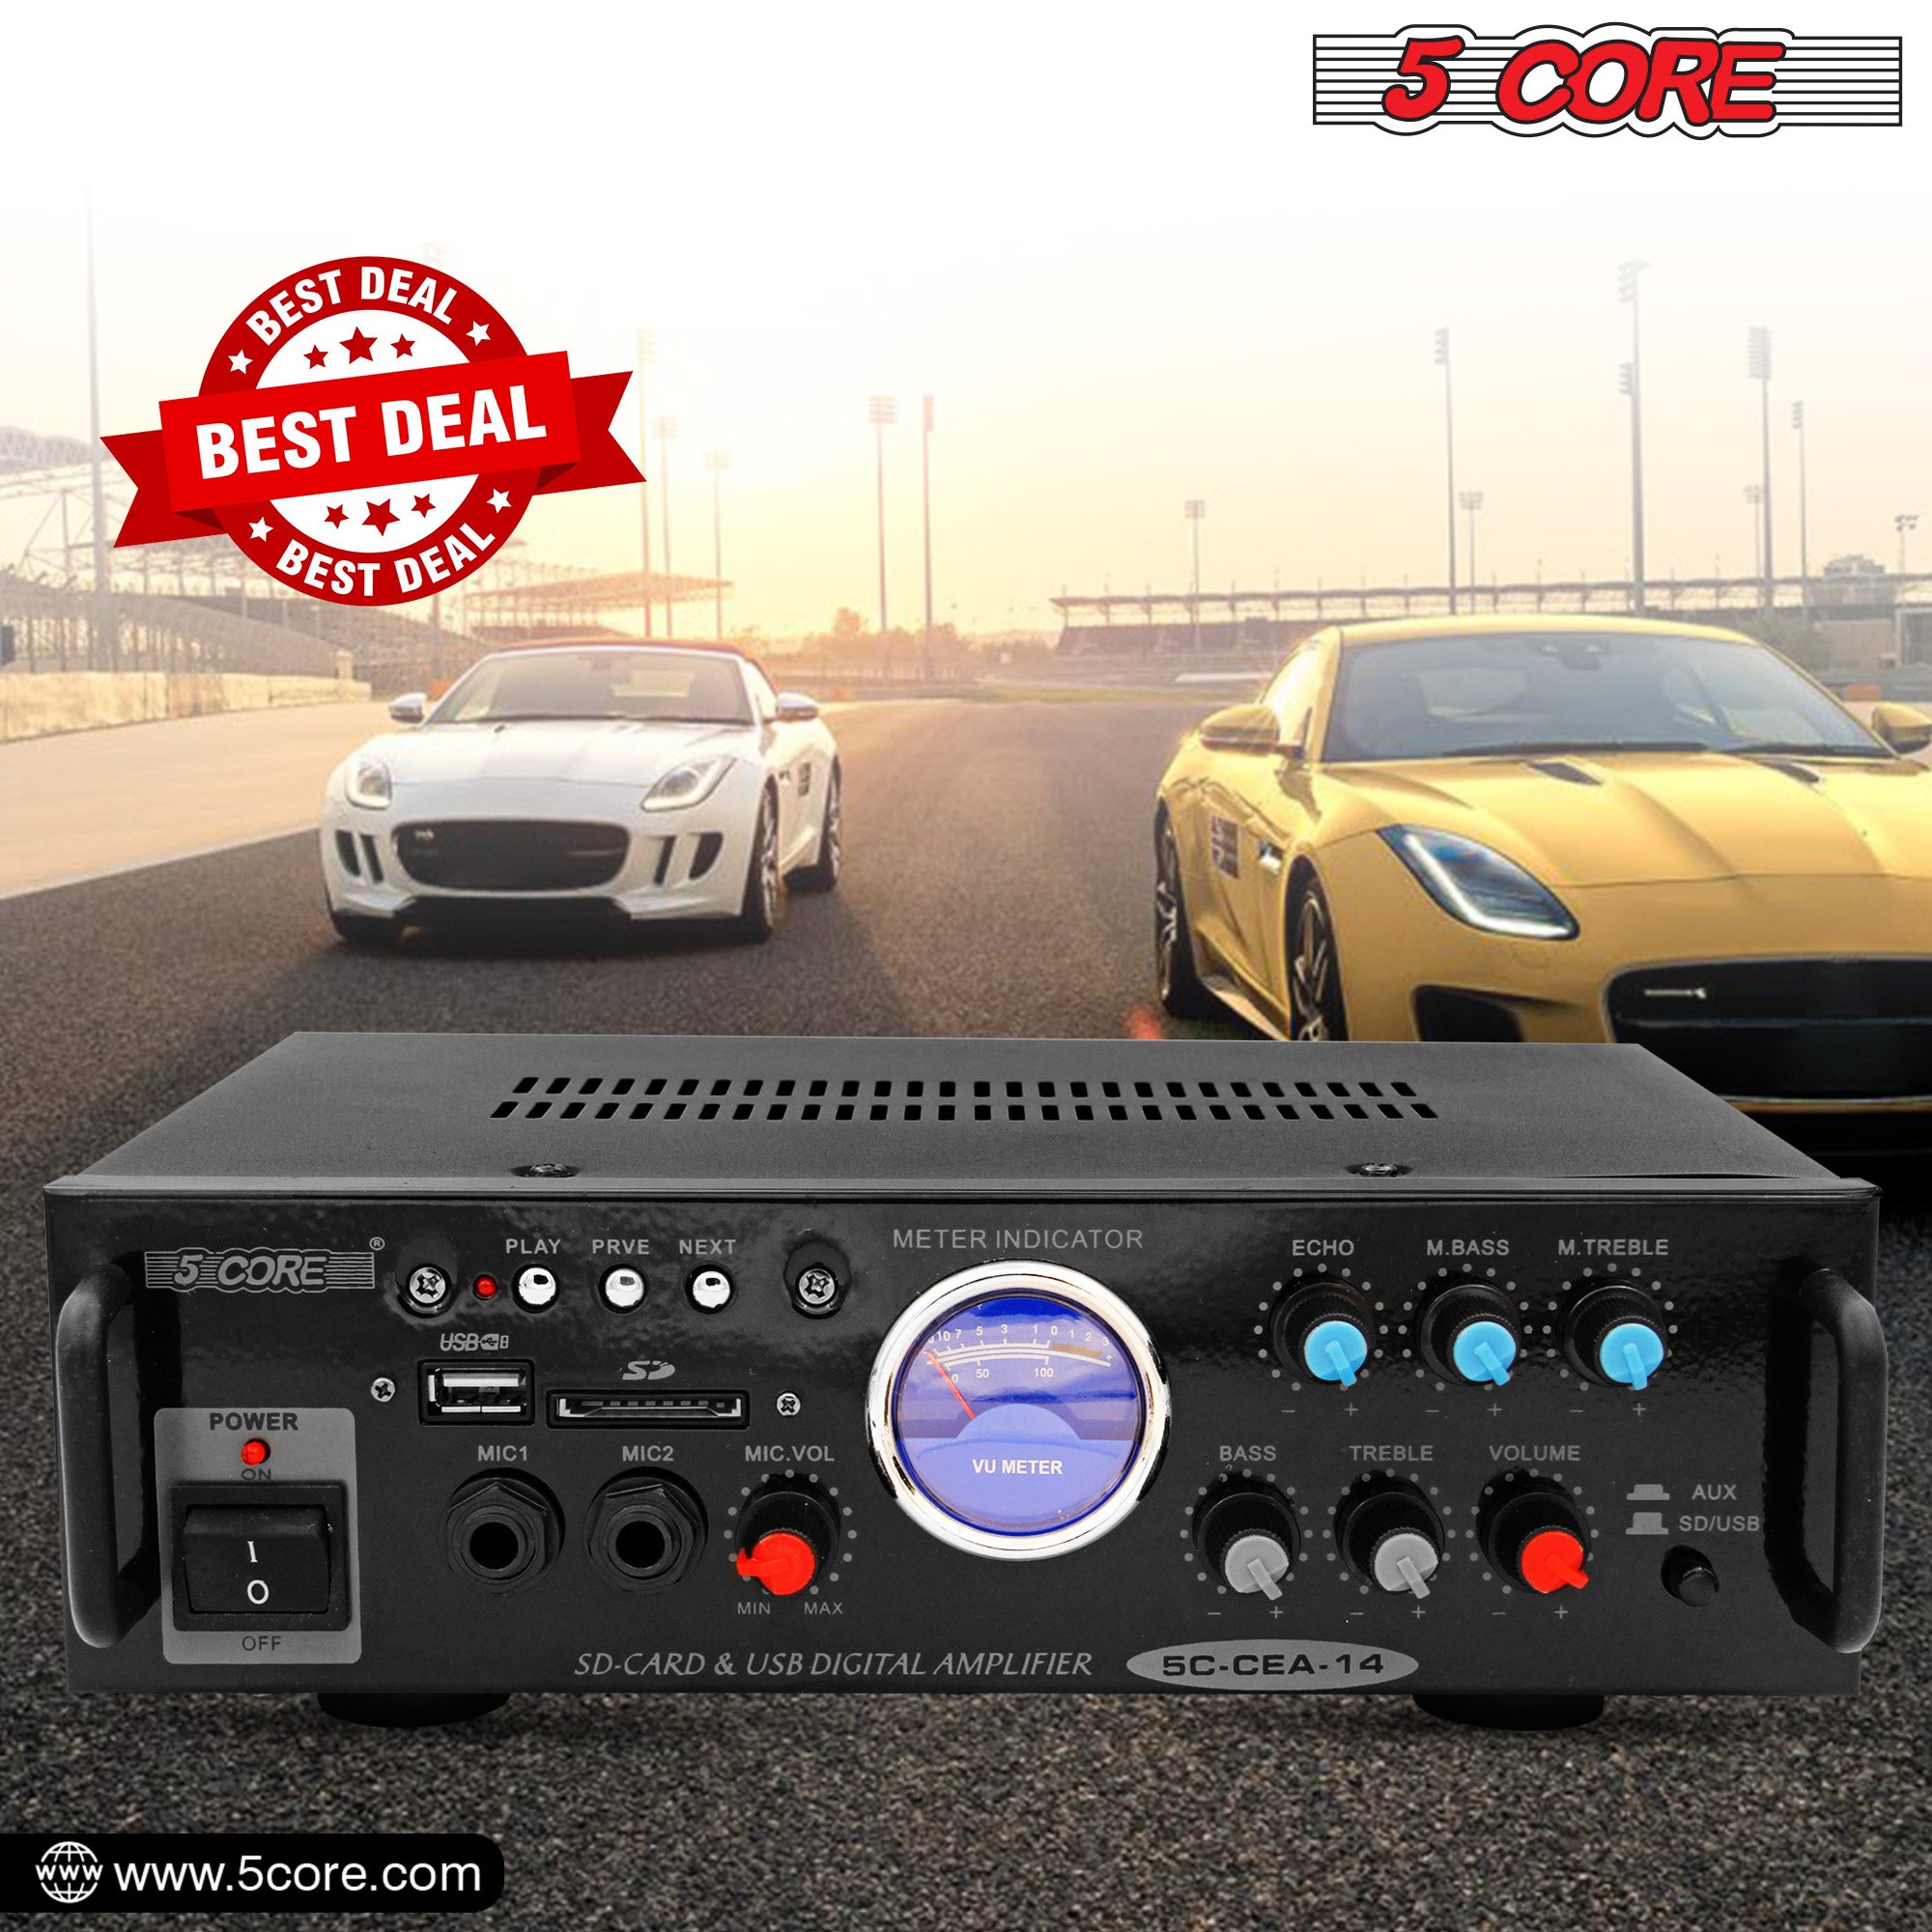 Best deal in car amplifier